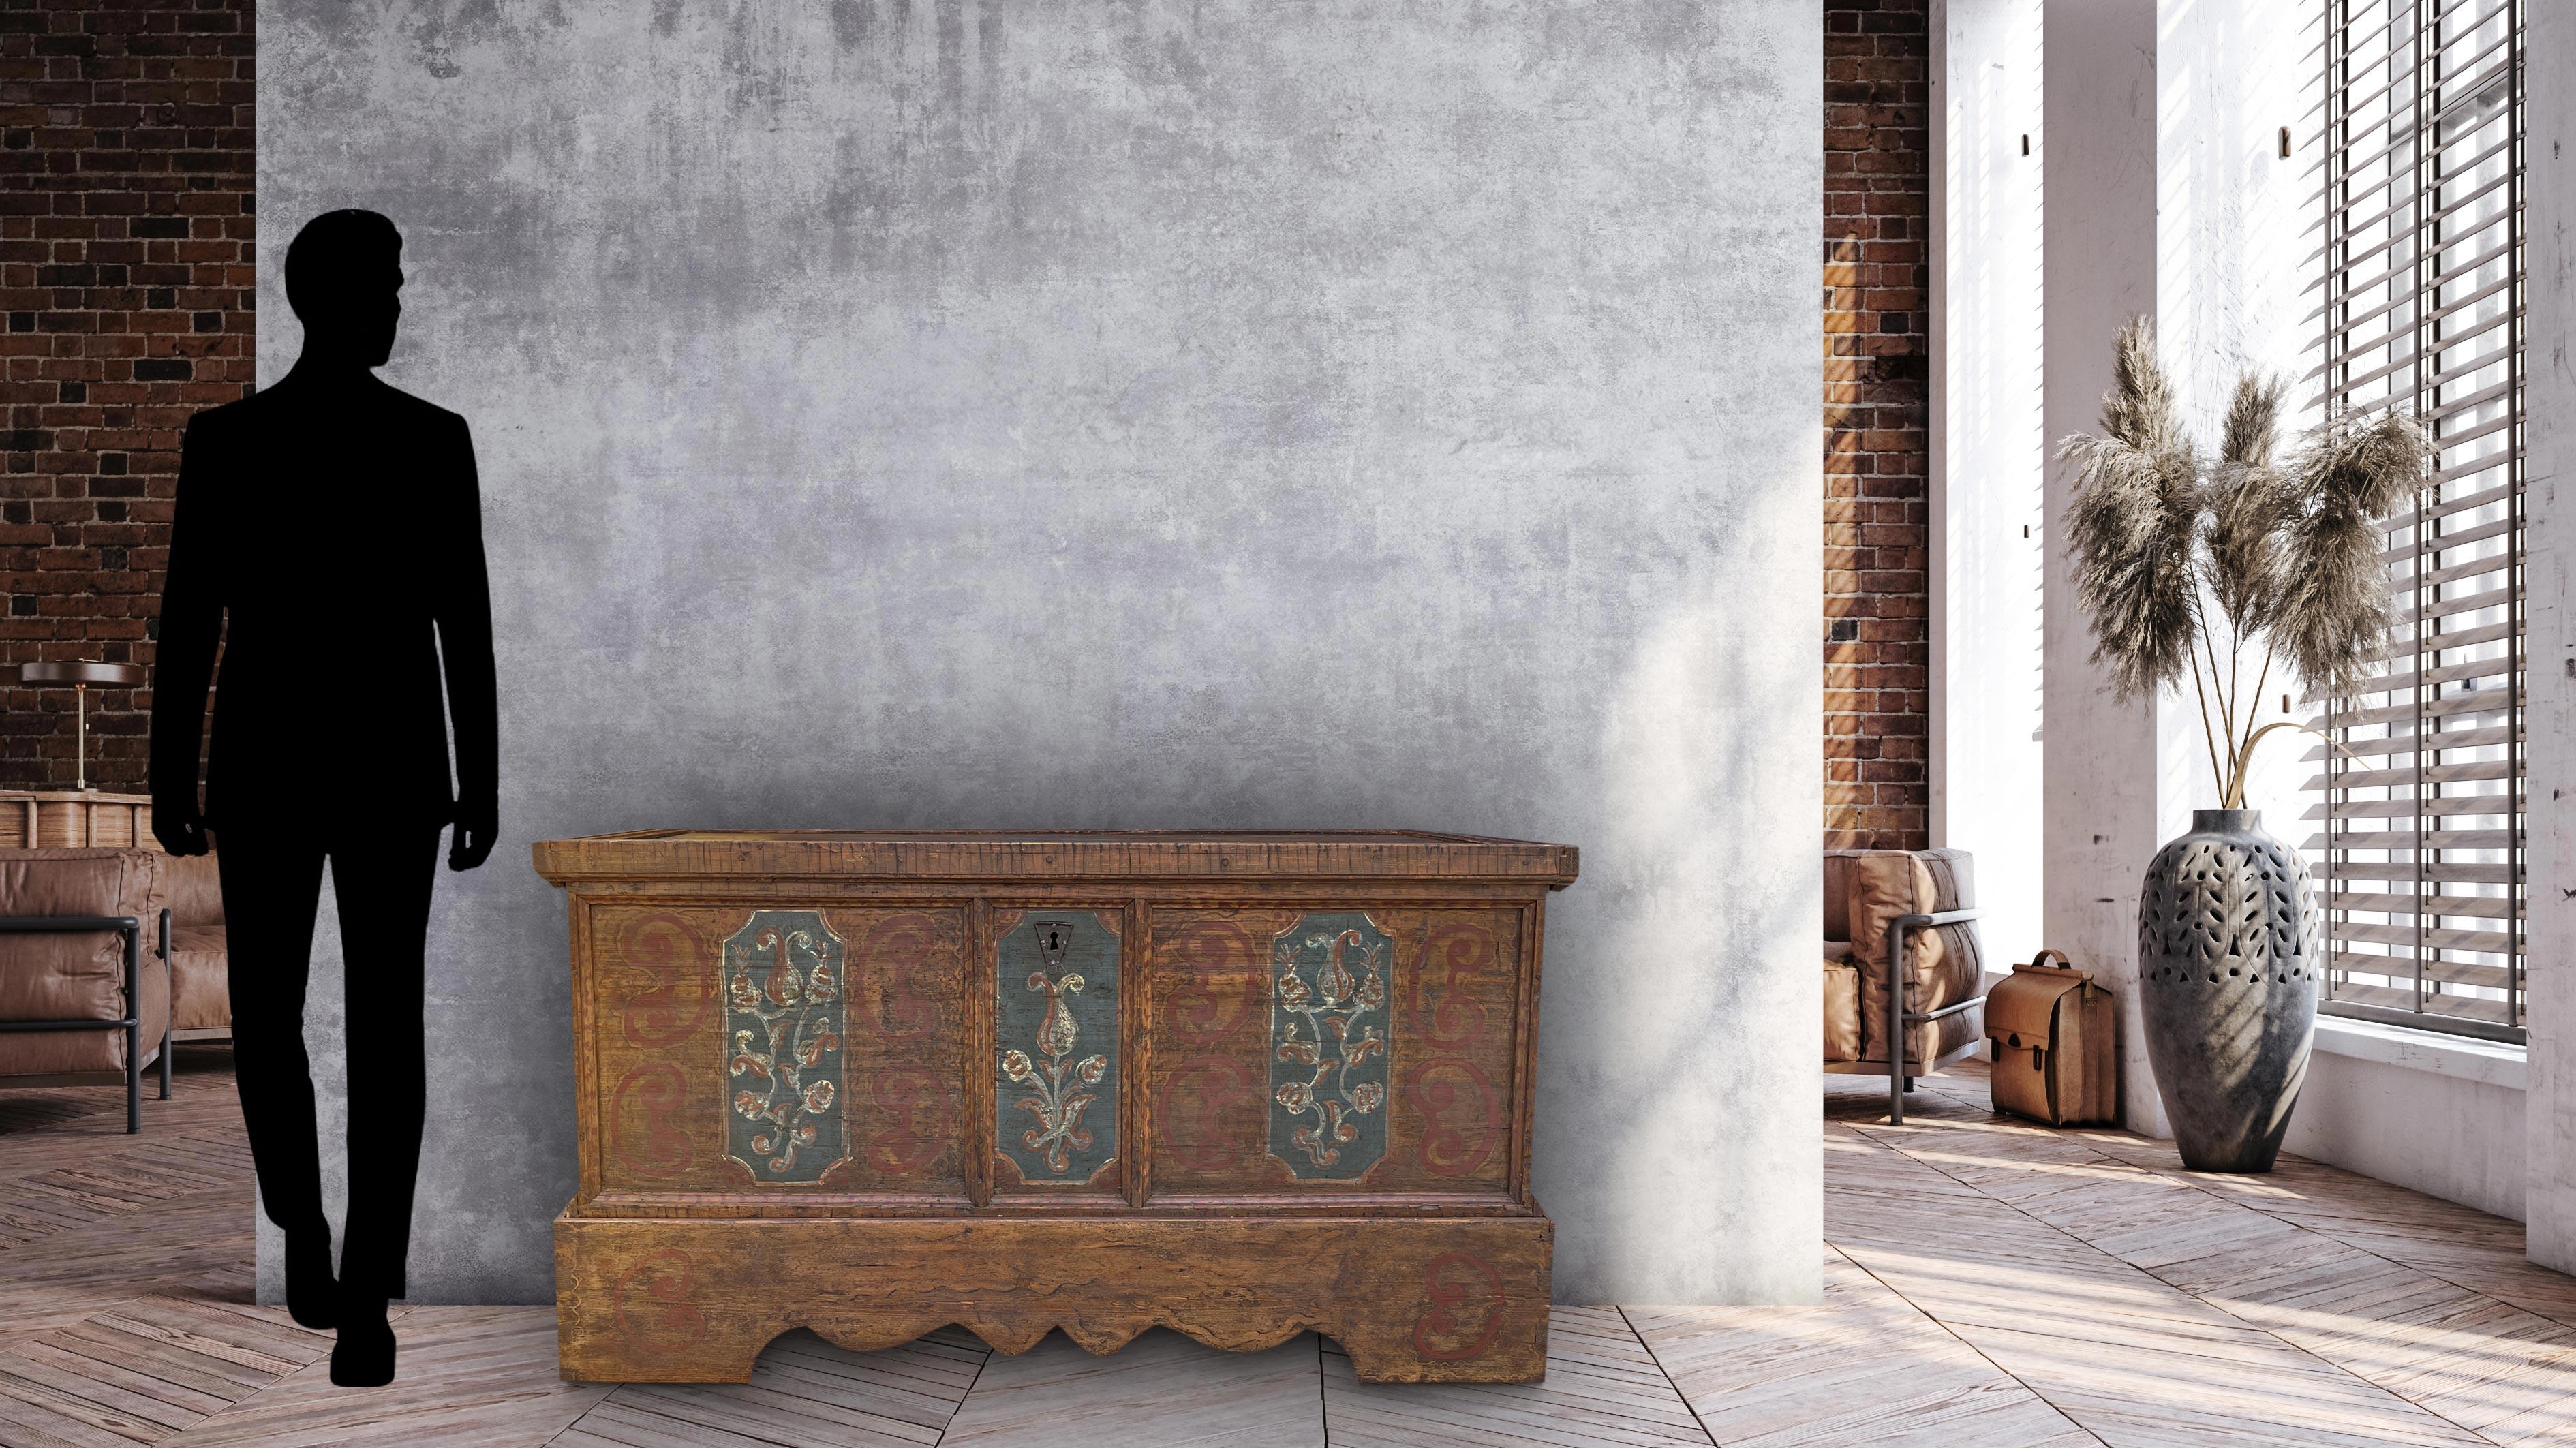 Coffre peint tyrolien

H. 81 - W. 147 - P. 69

Ancien coffre tyrolien, entièrement construit en bois de sapin. La surface a été décorée avec une couleur de fond brun foncé, semi-couvrante, qui crée divers effets géométriques sur la surface. En